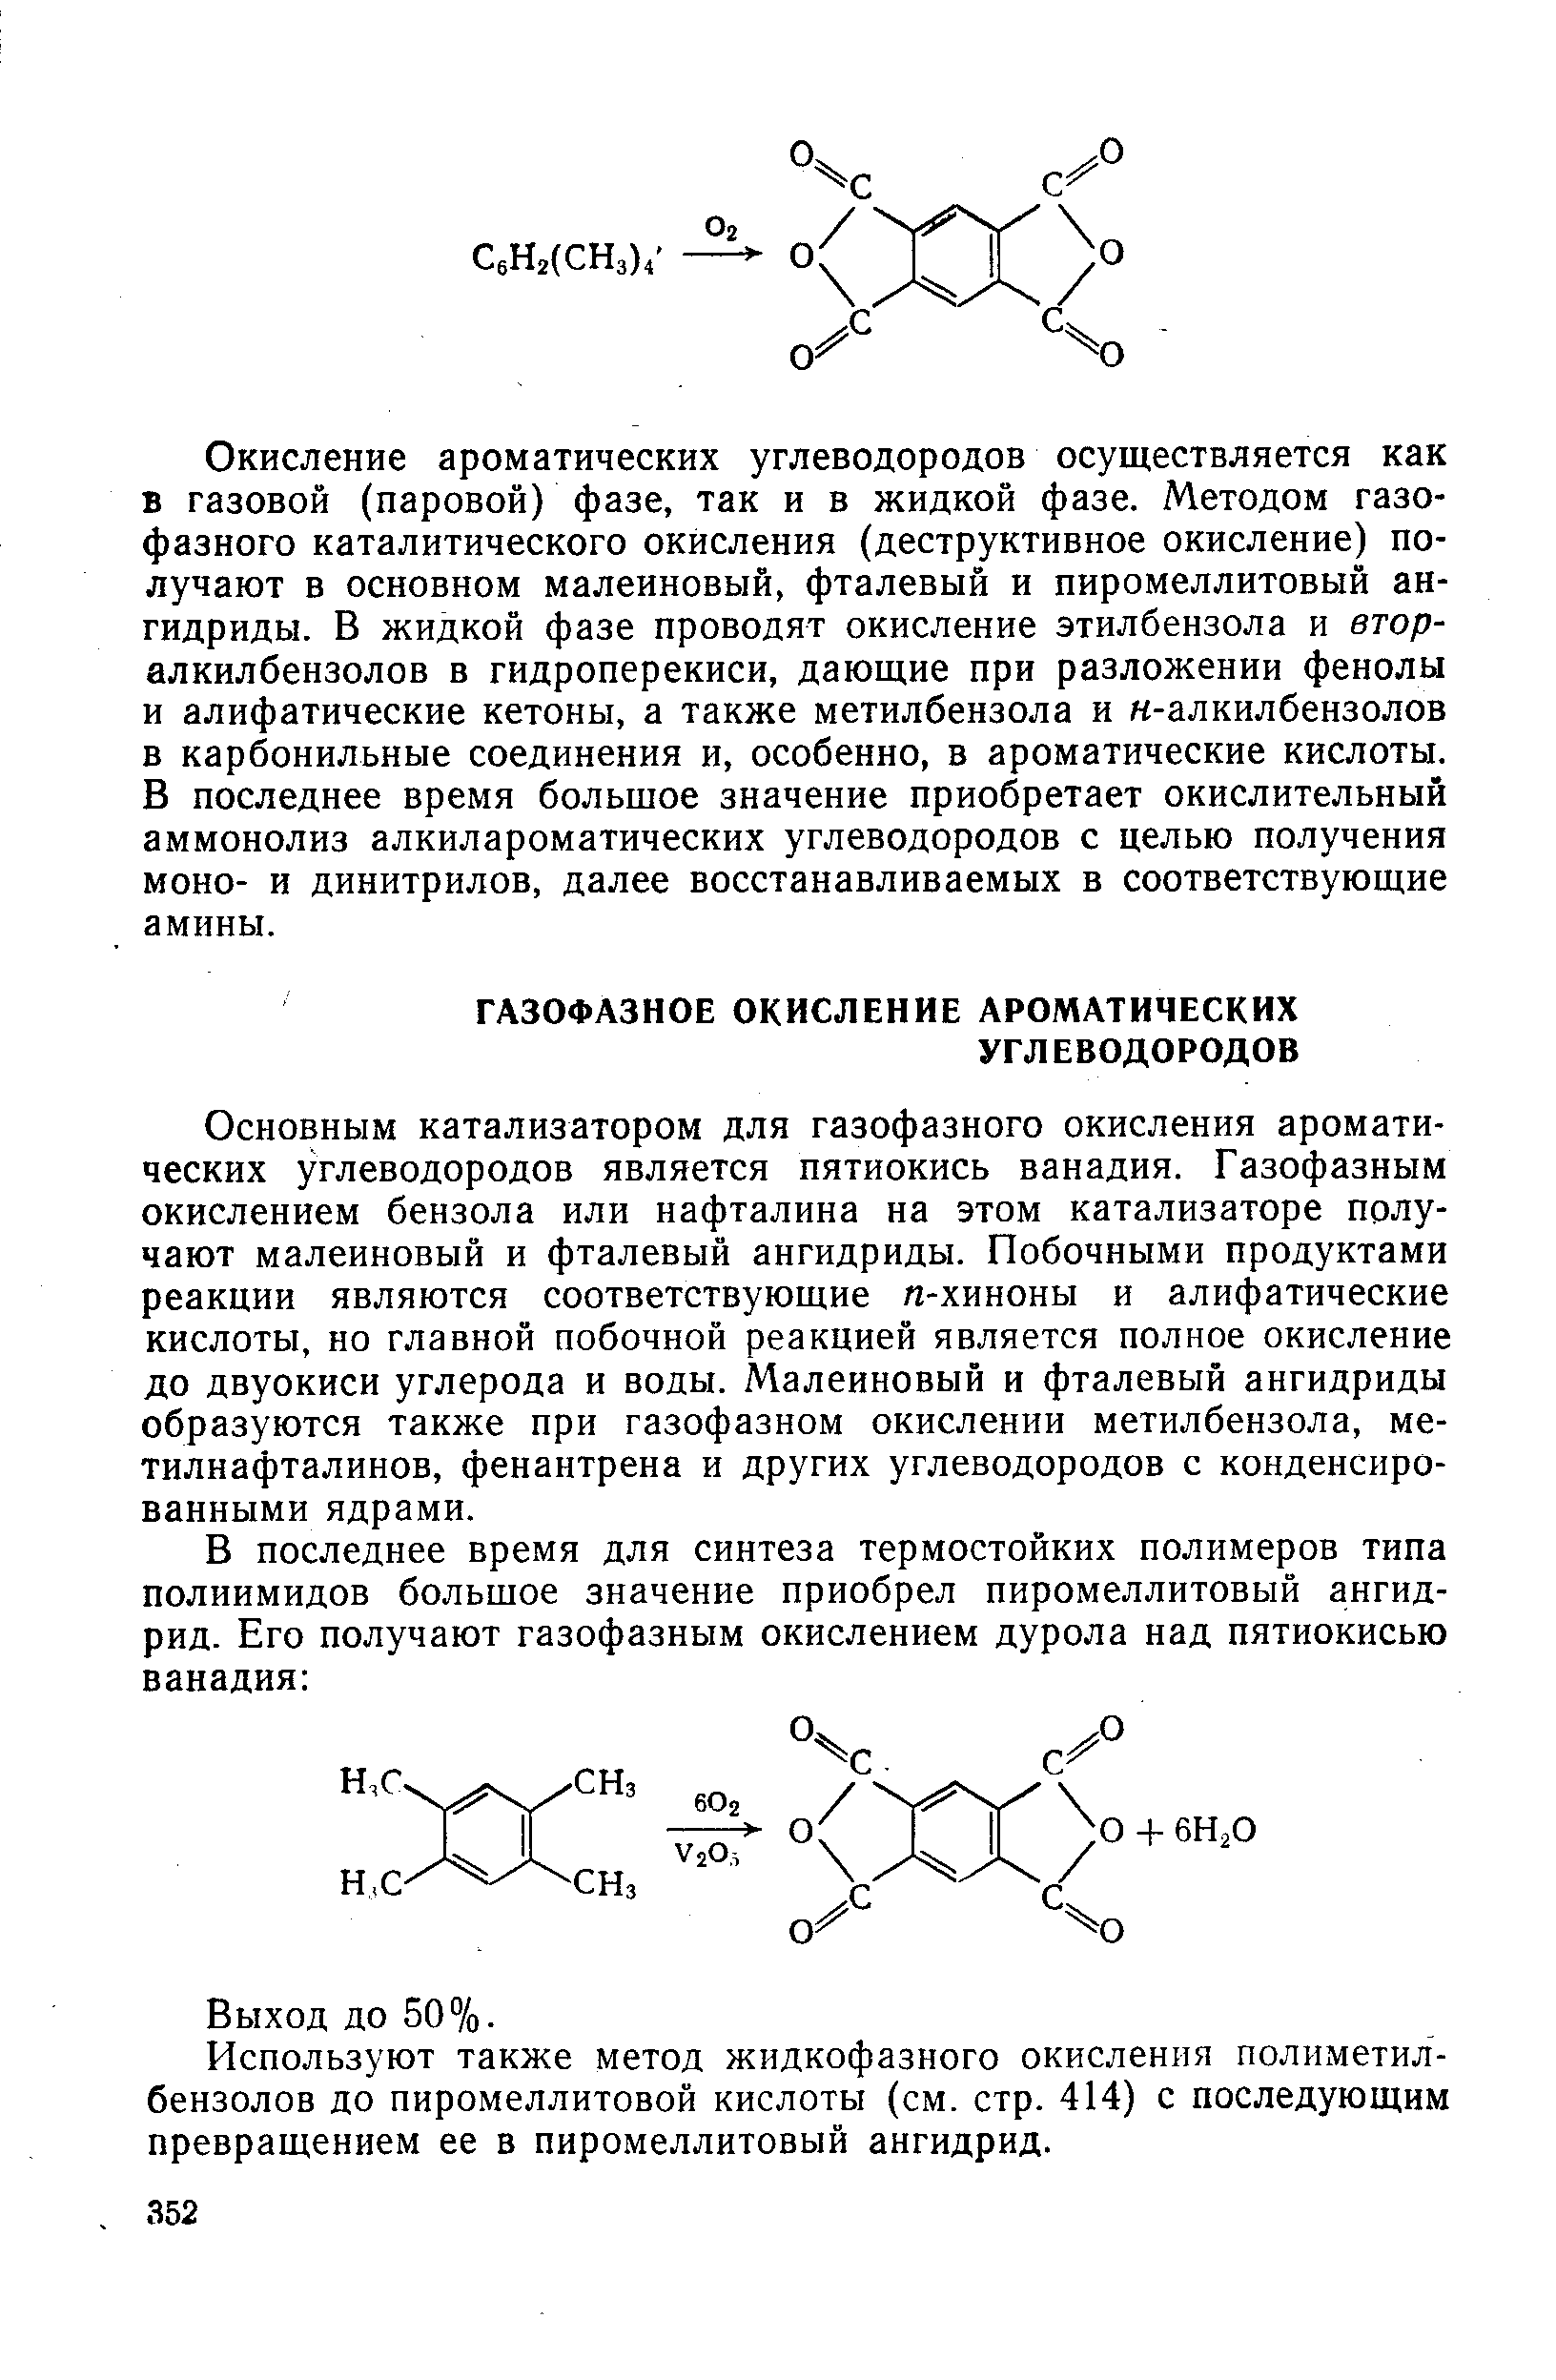 Окисление ароматических углеводородов осуществляется как в газовой (паровой) фазе, так и в жидкой фазе. Методом газофазного каталитического окисления (деструктивное окисление) получают в основном малеиновый, фталевый и пиромеллитовый ангидриды. В жидкой фазе проводят окисление этилбензола и втор-алкилбензолов в гидроперекиси, дающие при разложении фенолы и алифатические кетоны, а также метилбензола и н-алкилбензолов в карбонильные соединения и, особенно, в ароматические кислоты. В последнее время большое значение приобретает окислительный аммонолиз алкилароматических углеводородов с целью получения моно- и динитрилов, далее восстанавливаемых в соответствующие амины.